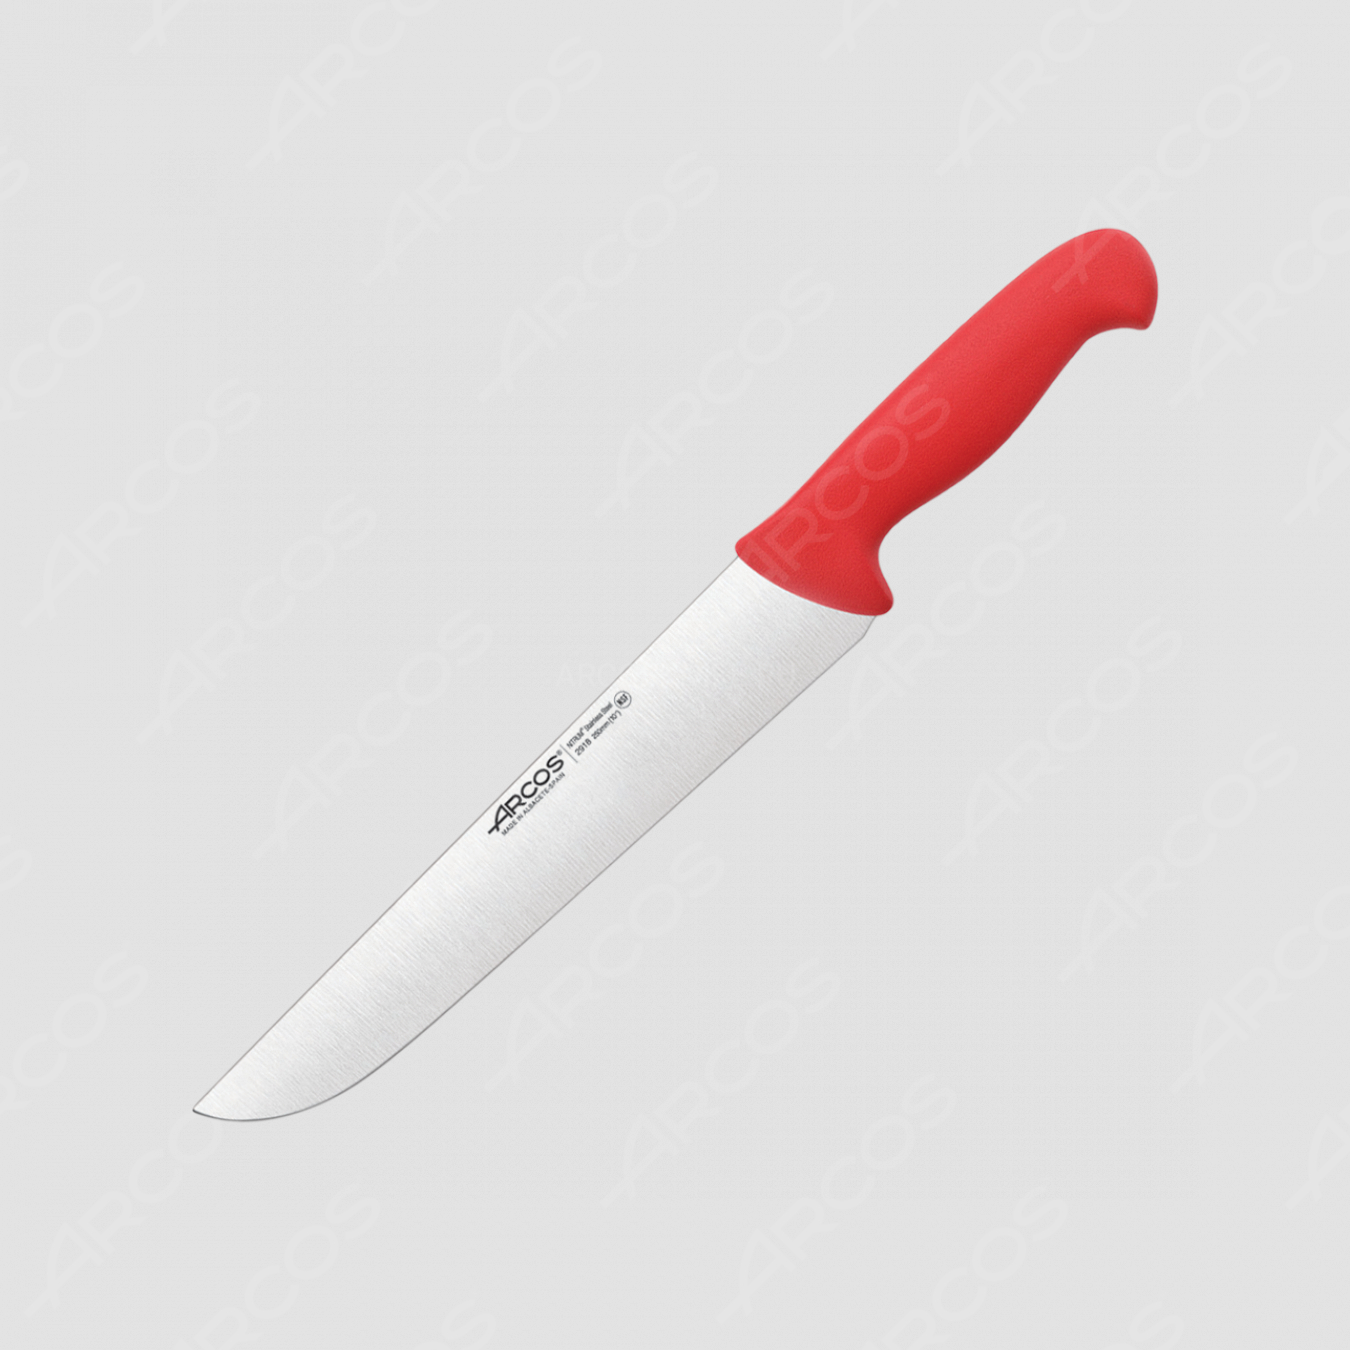 Нож кухонный для разделки 25 см, рукоять - красная, серия 2900, ARCOS, Испания